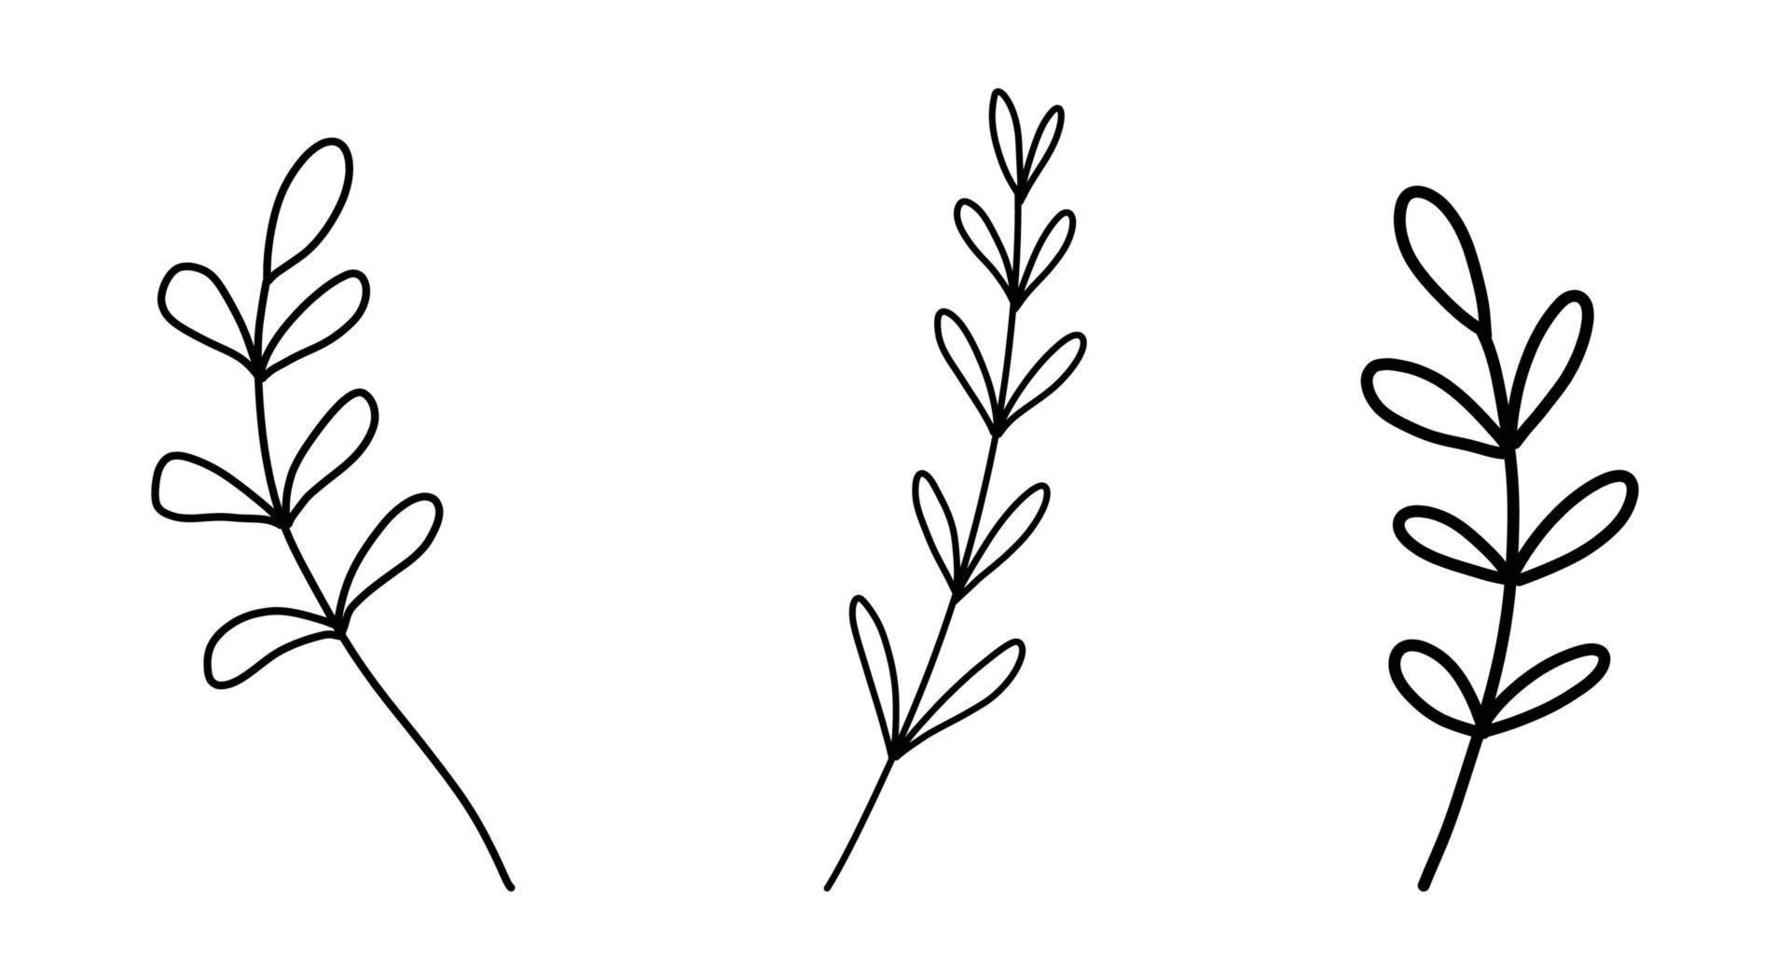 uppsättning av blommig handritad vektor. handritade växter i doodle stil. botanisk illustration. vektor